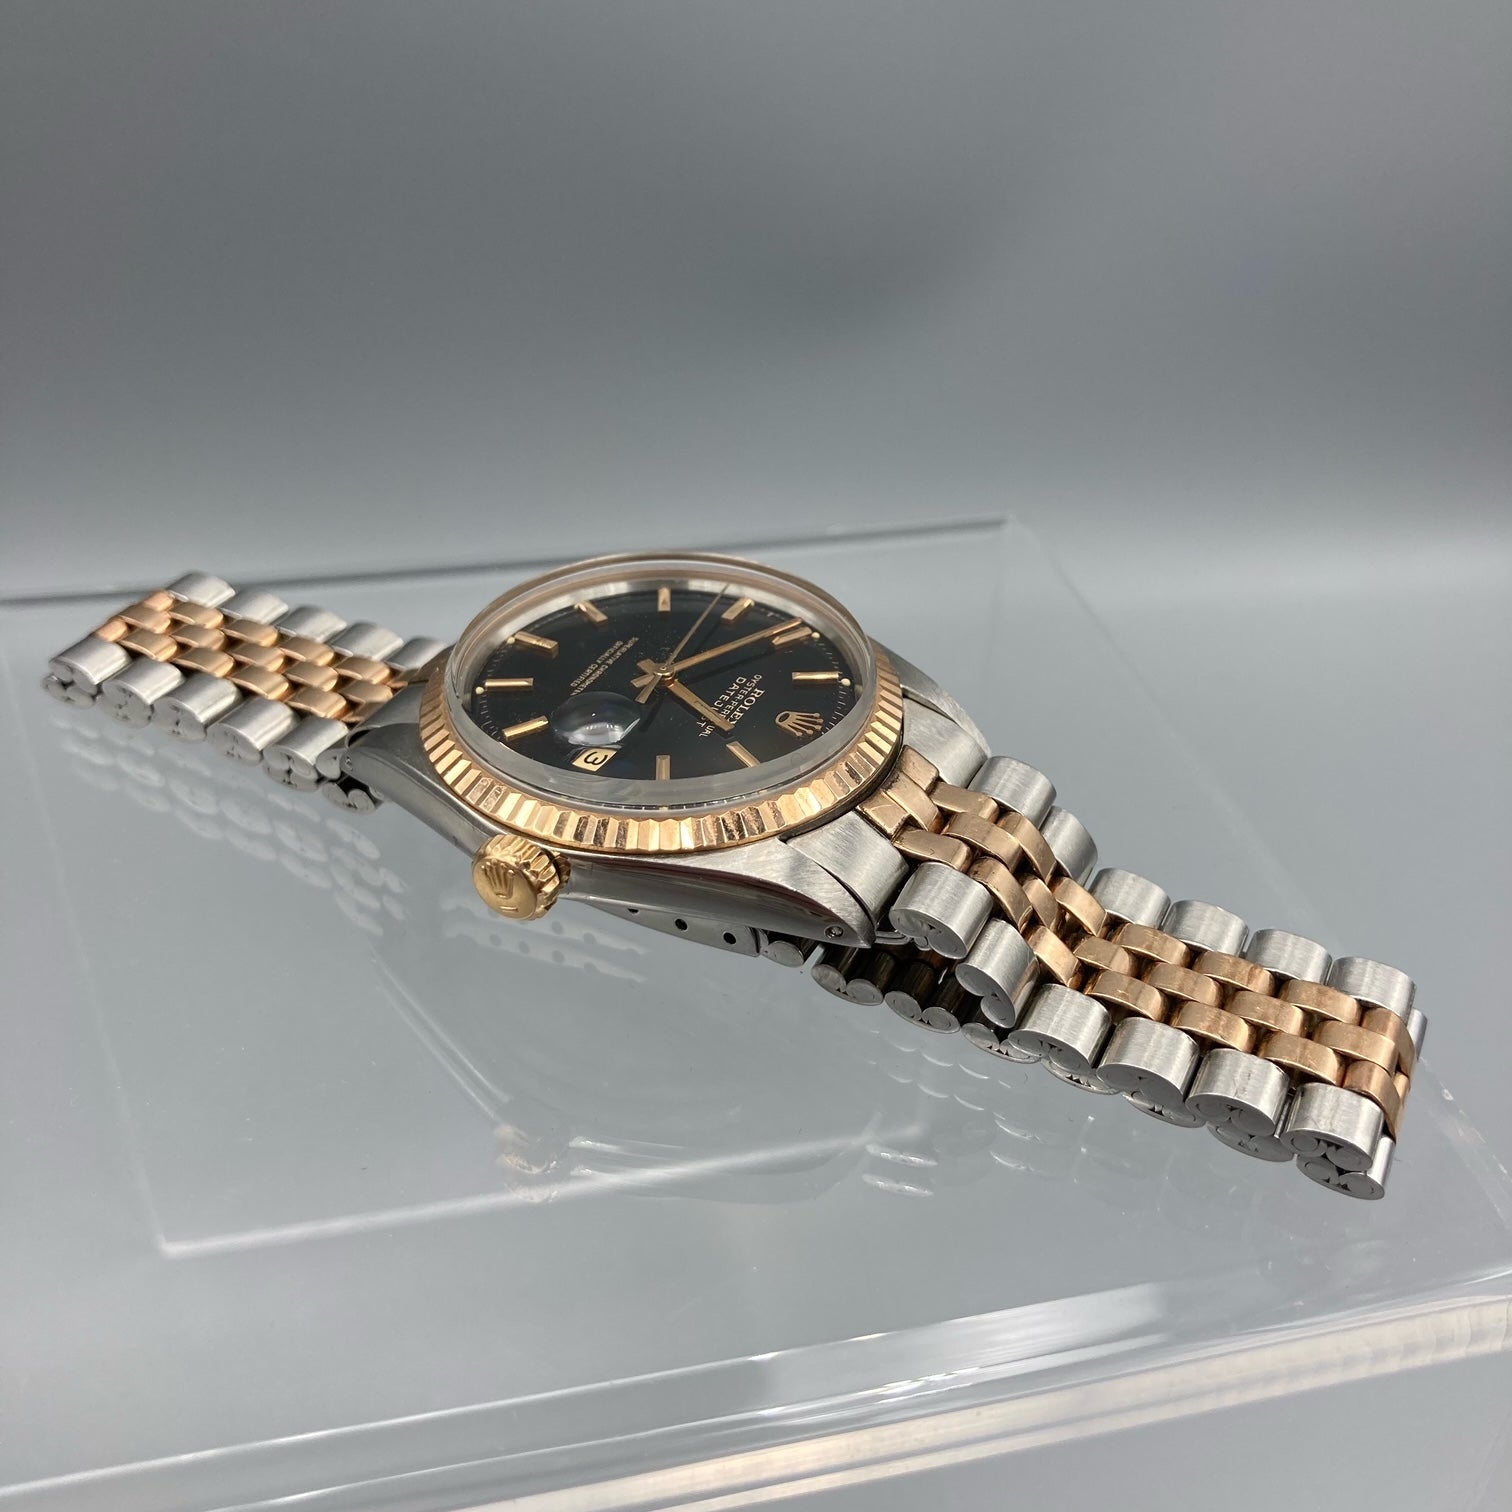 Rolex Datejust Vintage 1970's Steel & Rose Gold Watch - 1601